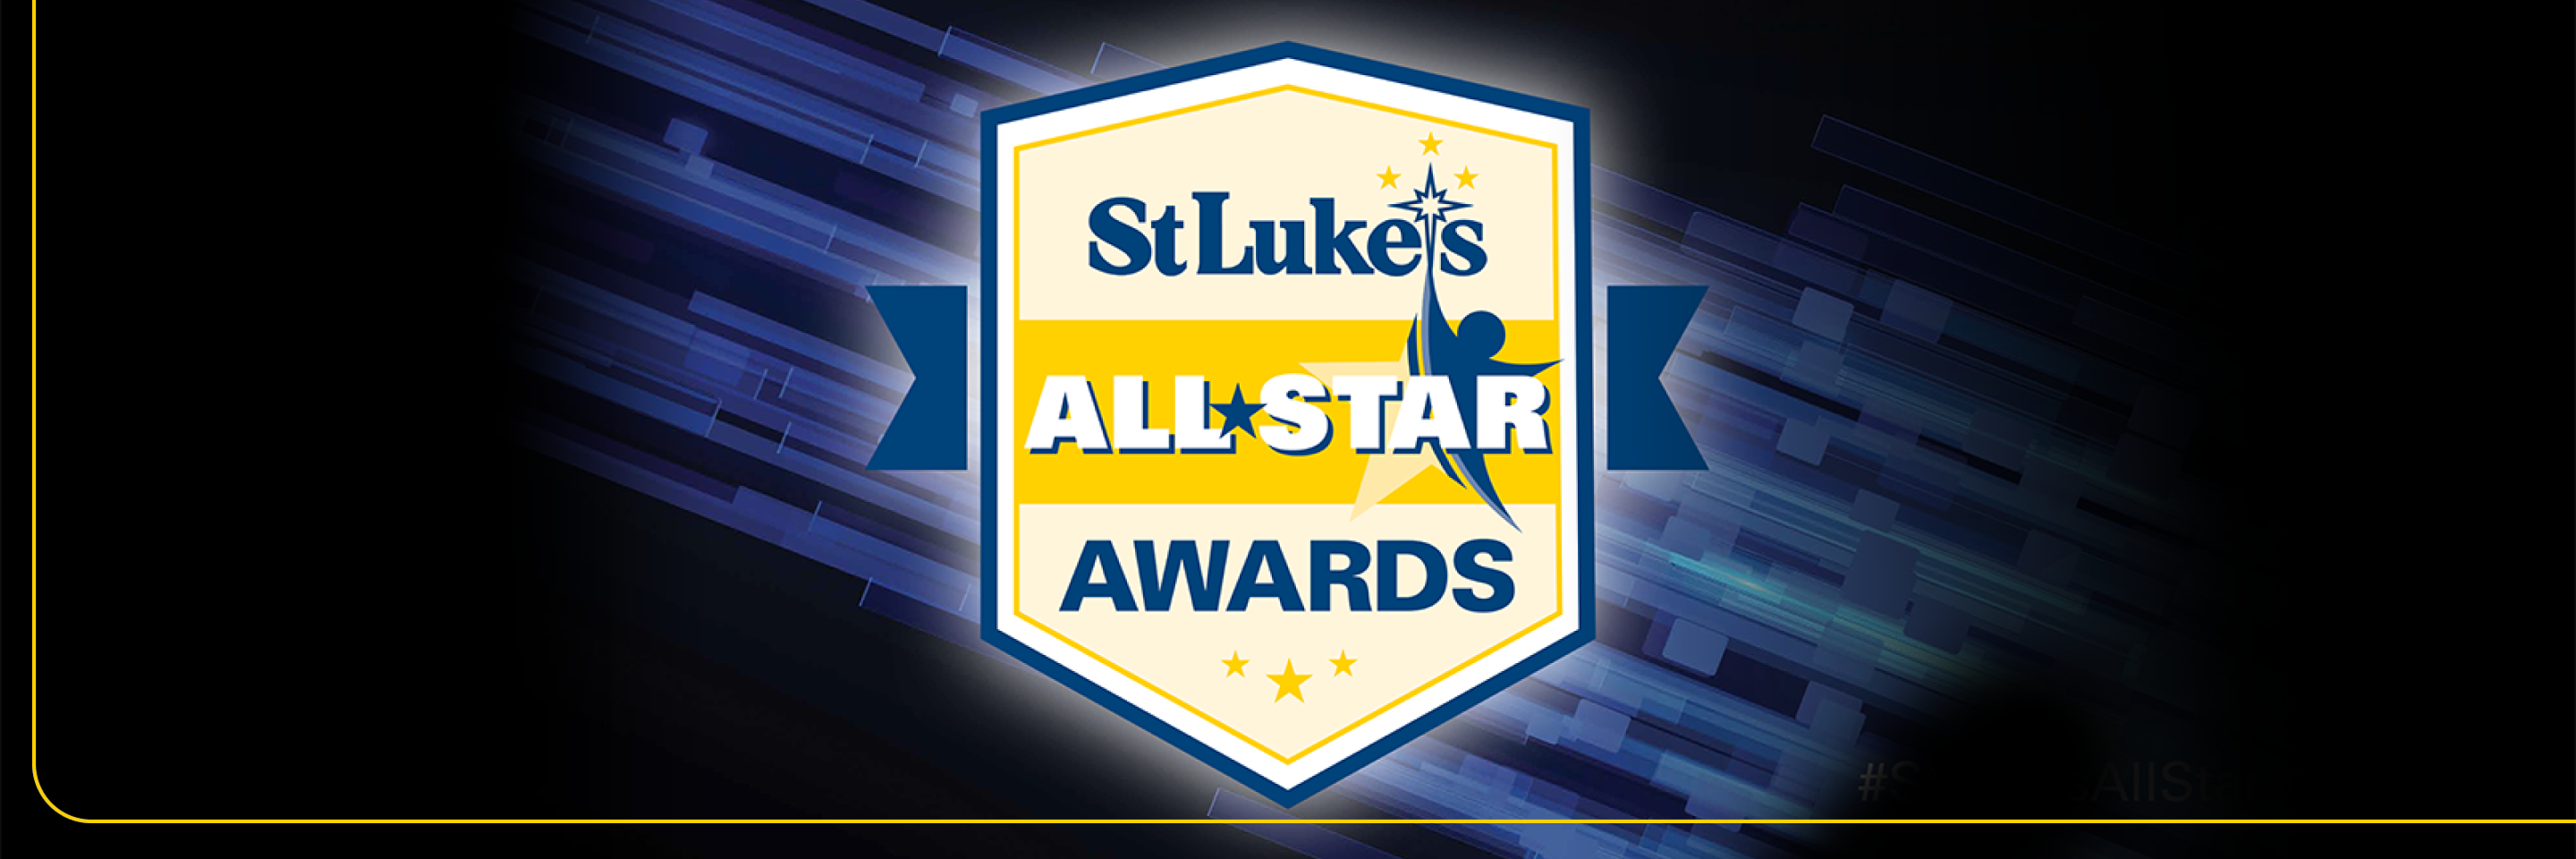 St. Luke's All Star Awards